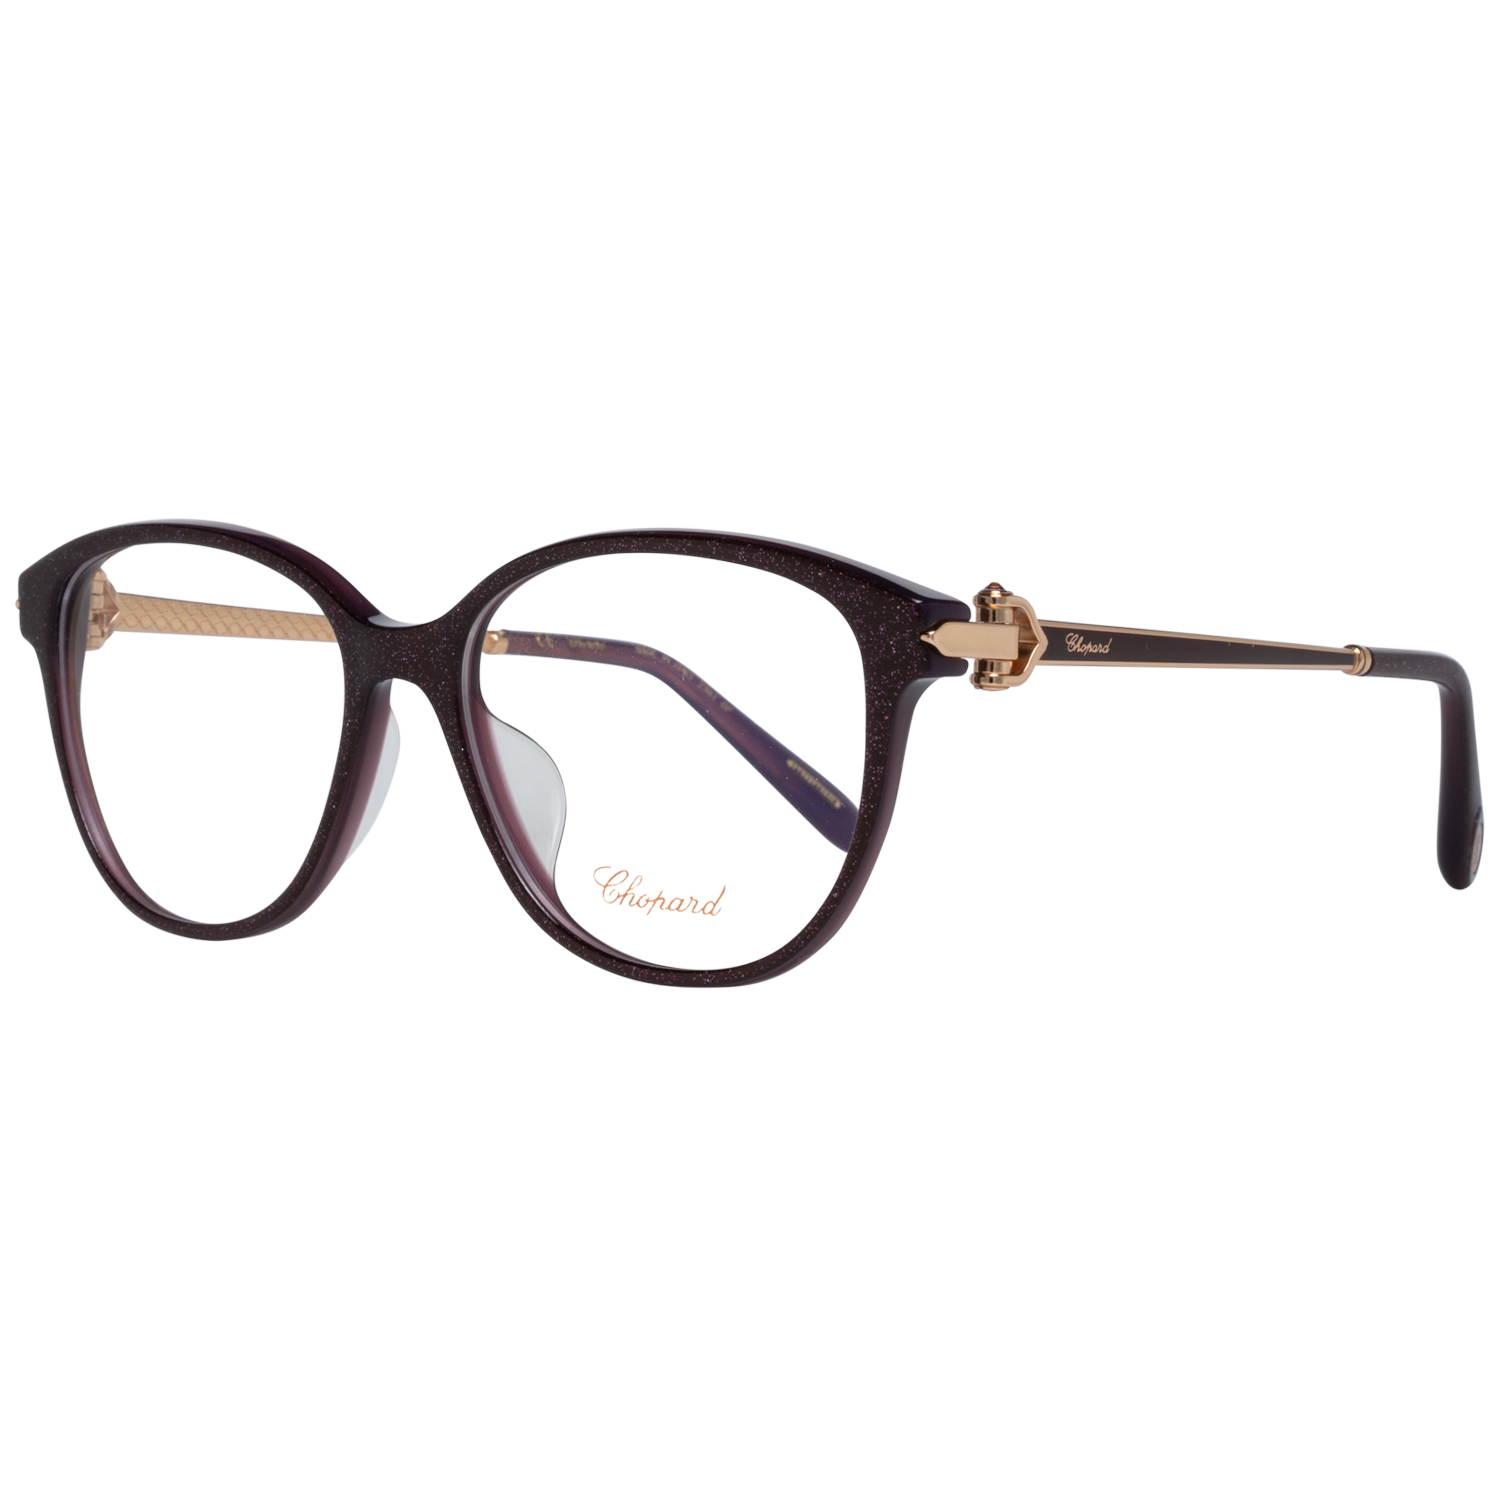 Chopard Frames Chopard Glasses Frames VCH245G 0GBG 53mm Eyeglasses Eyewear UK USA Australia 